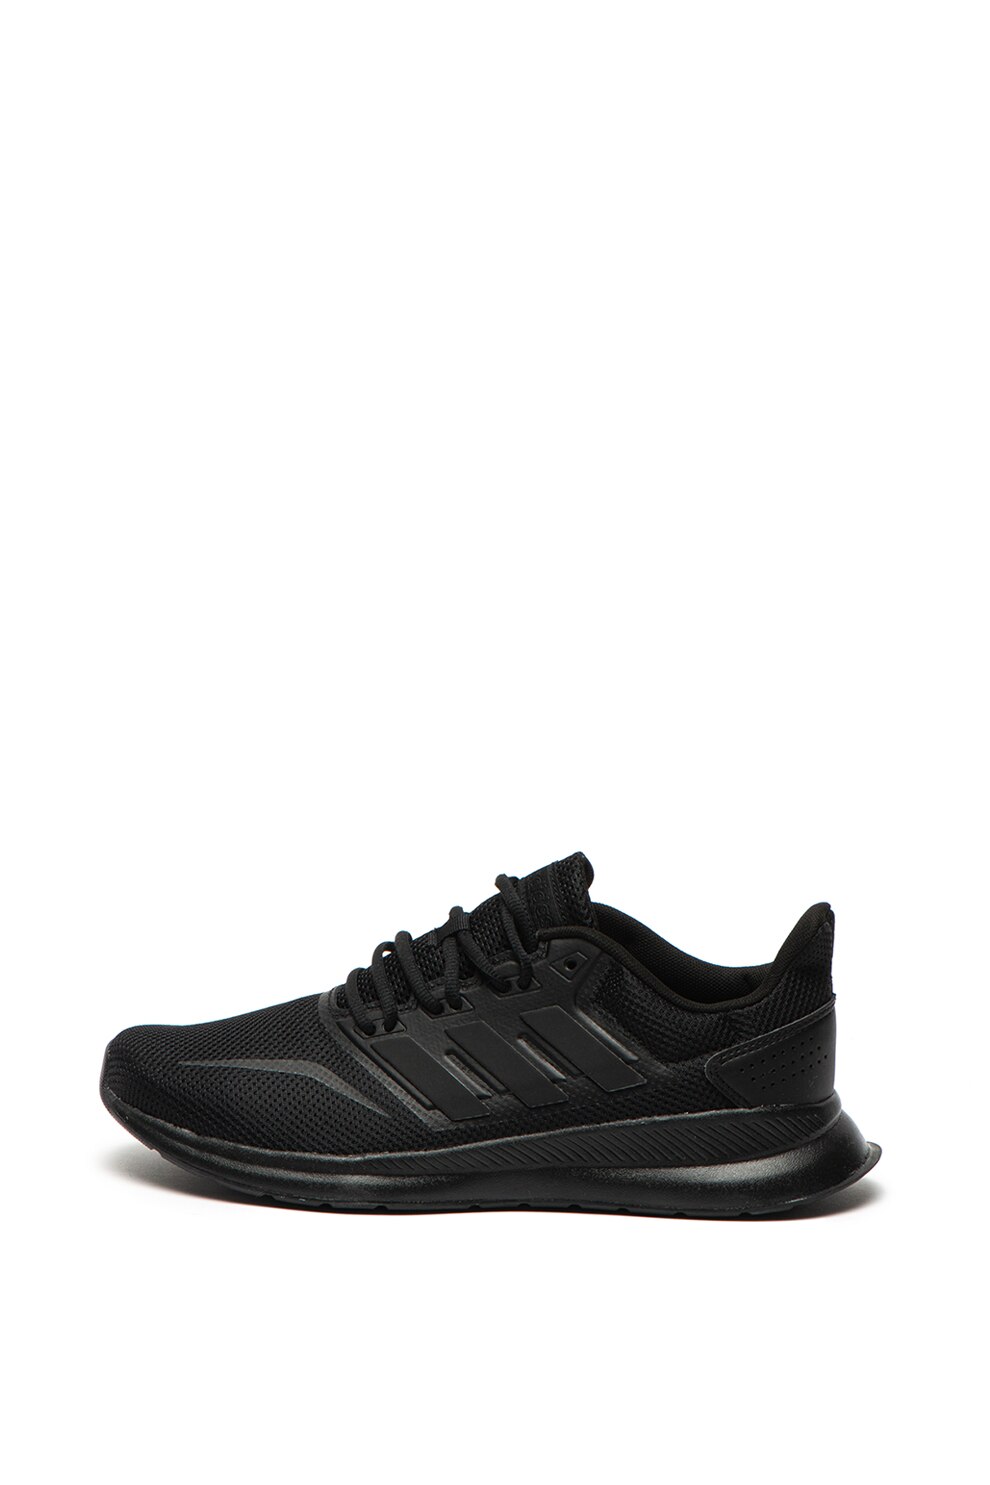 Twinkle companion Neglect Adidas PERFORMANCE, Pantofi cu insertii de plasa, pentru alergare  Runfalcon, Negru, 10.5 - eMAG.ro